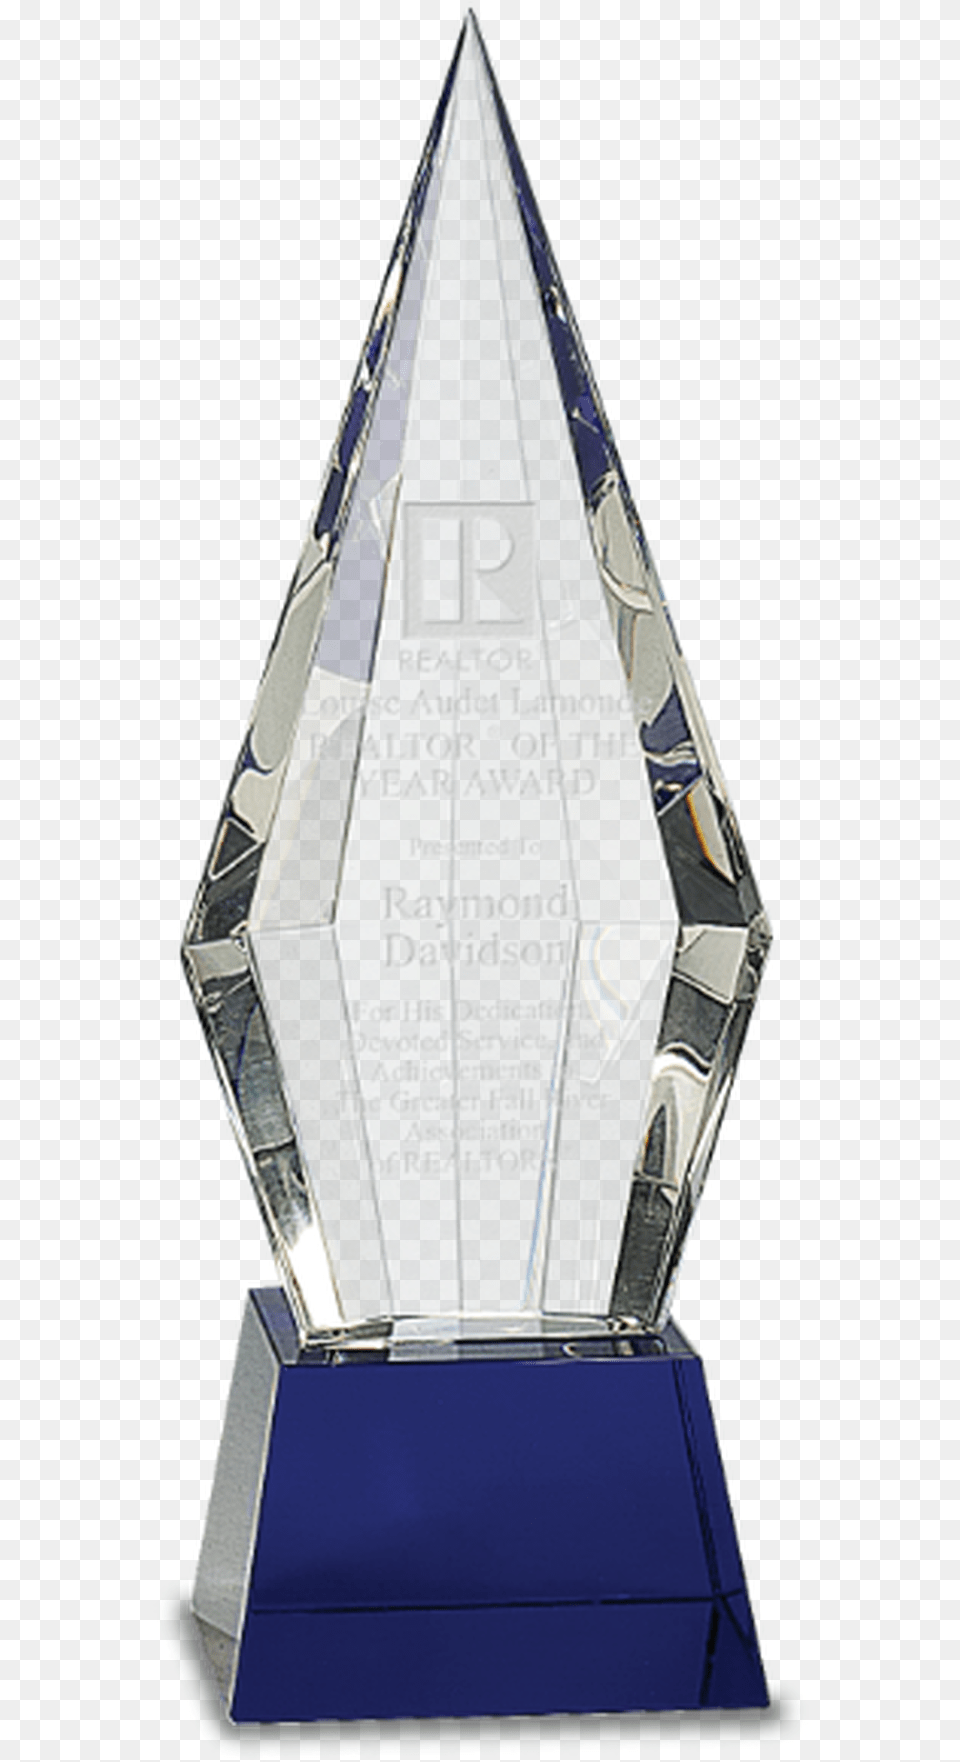 Crystal Faceted Obelisk On A Blue Crystal Base, Trophy Free Transparent Png